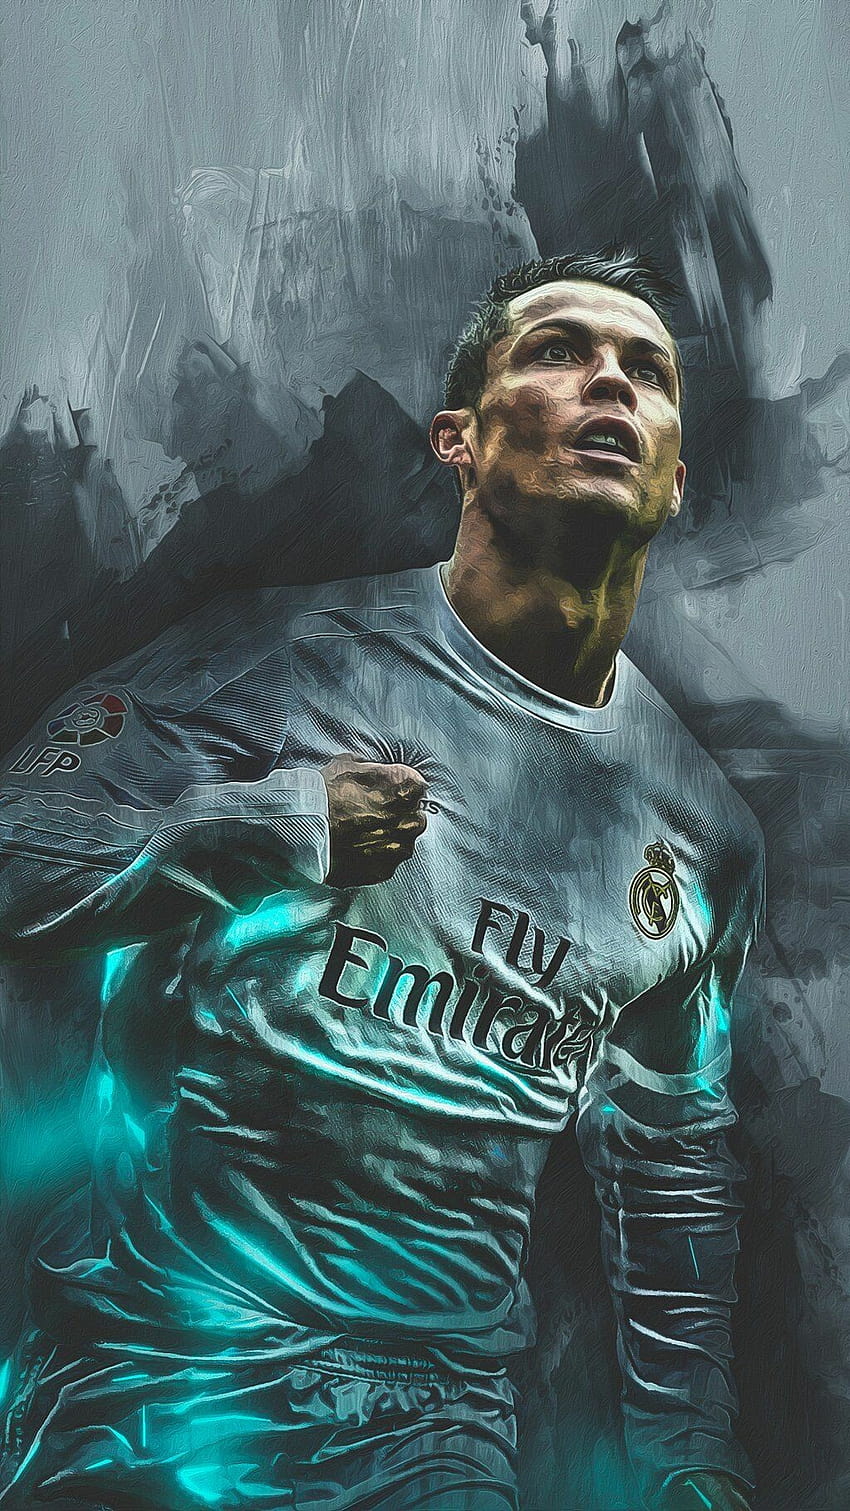 Các hình nền Cristiano Ronaldo cool sẽ làm gia tăng sự phấn khích và tinh thần cạnh tranh của bạn. Với những hình ảnh độc đáo và tiên tiến, bạn sẽ có thể chọn cho mình bộ sưu tập hình nền đậm chất cá tính.